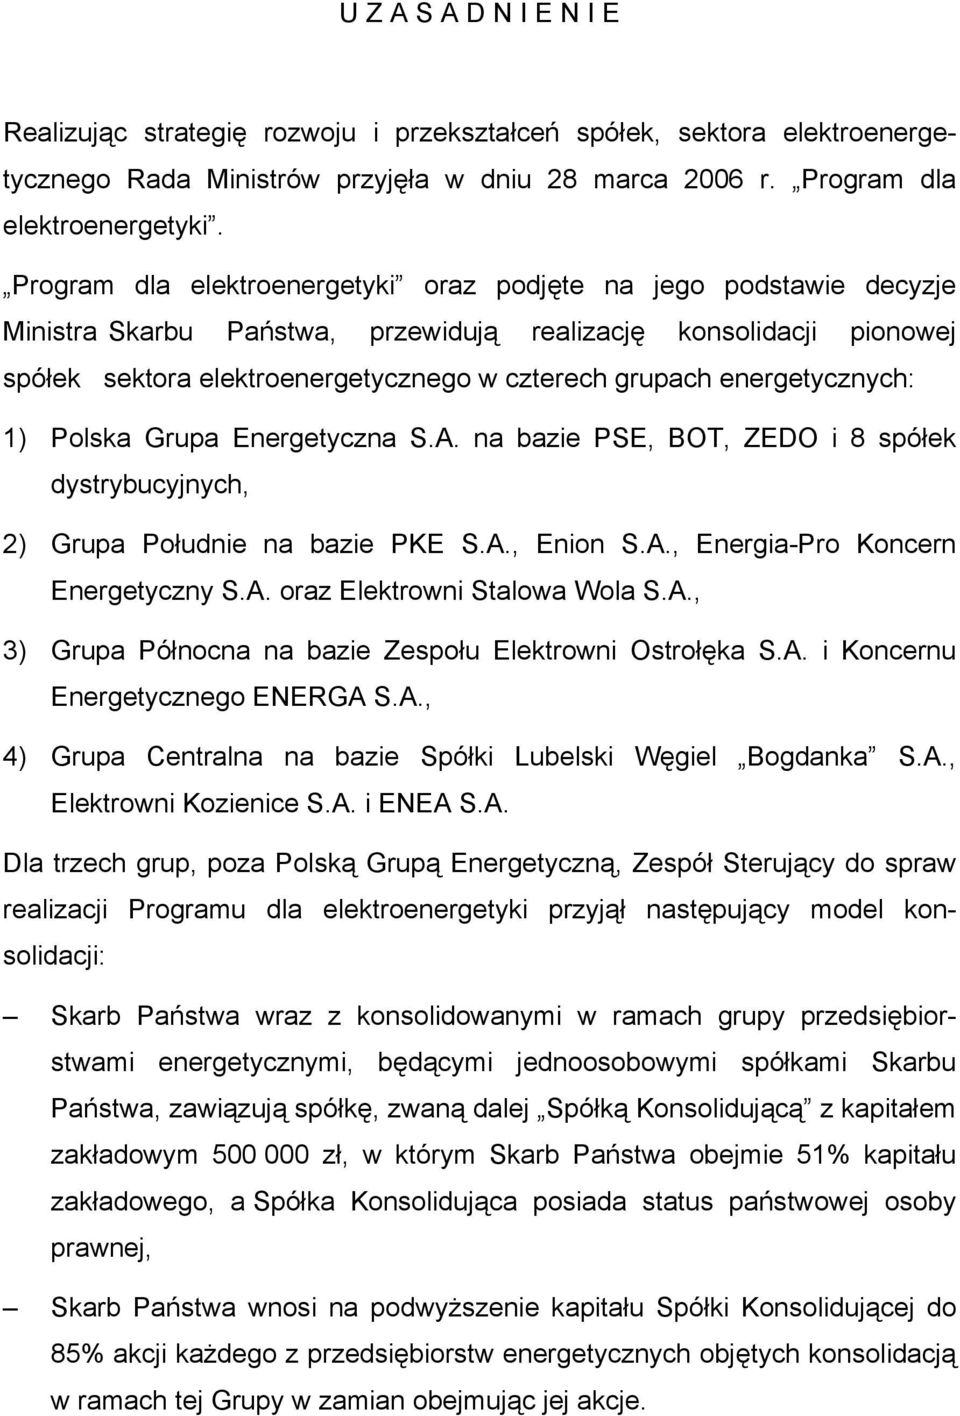 energetycznych: 1) Polska Grupa Energetyczna S.A. na bazie PSE, BOT, ZEDO i 8 spółek dystrybucyjnych, 2) Grupa Południe na bazie PKE S.A., Enion S.A., Energia-Pro Koncern Energetyczny S.A. oraz Elektrowni Stalowa Wola S.